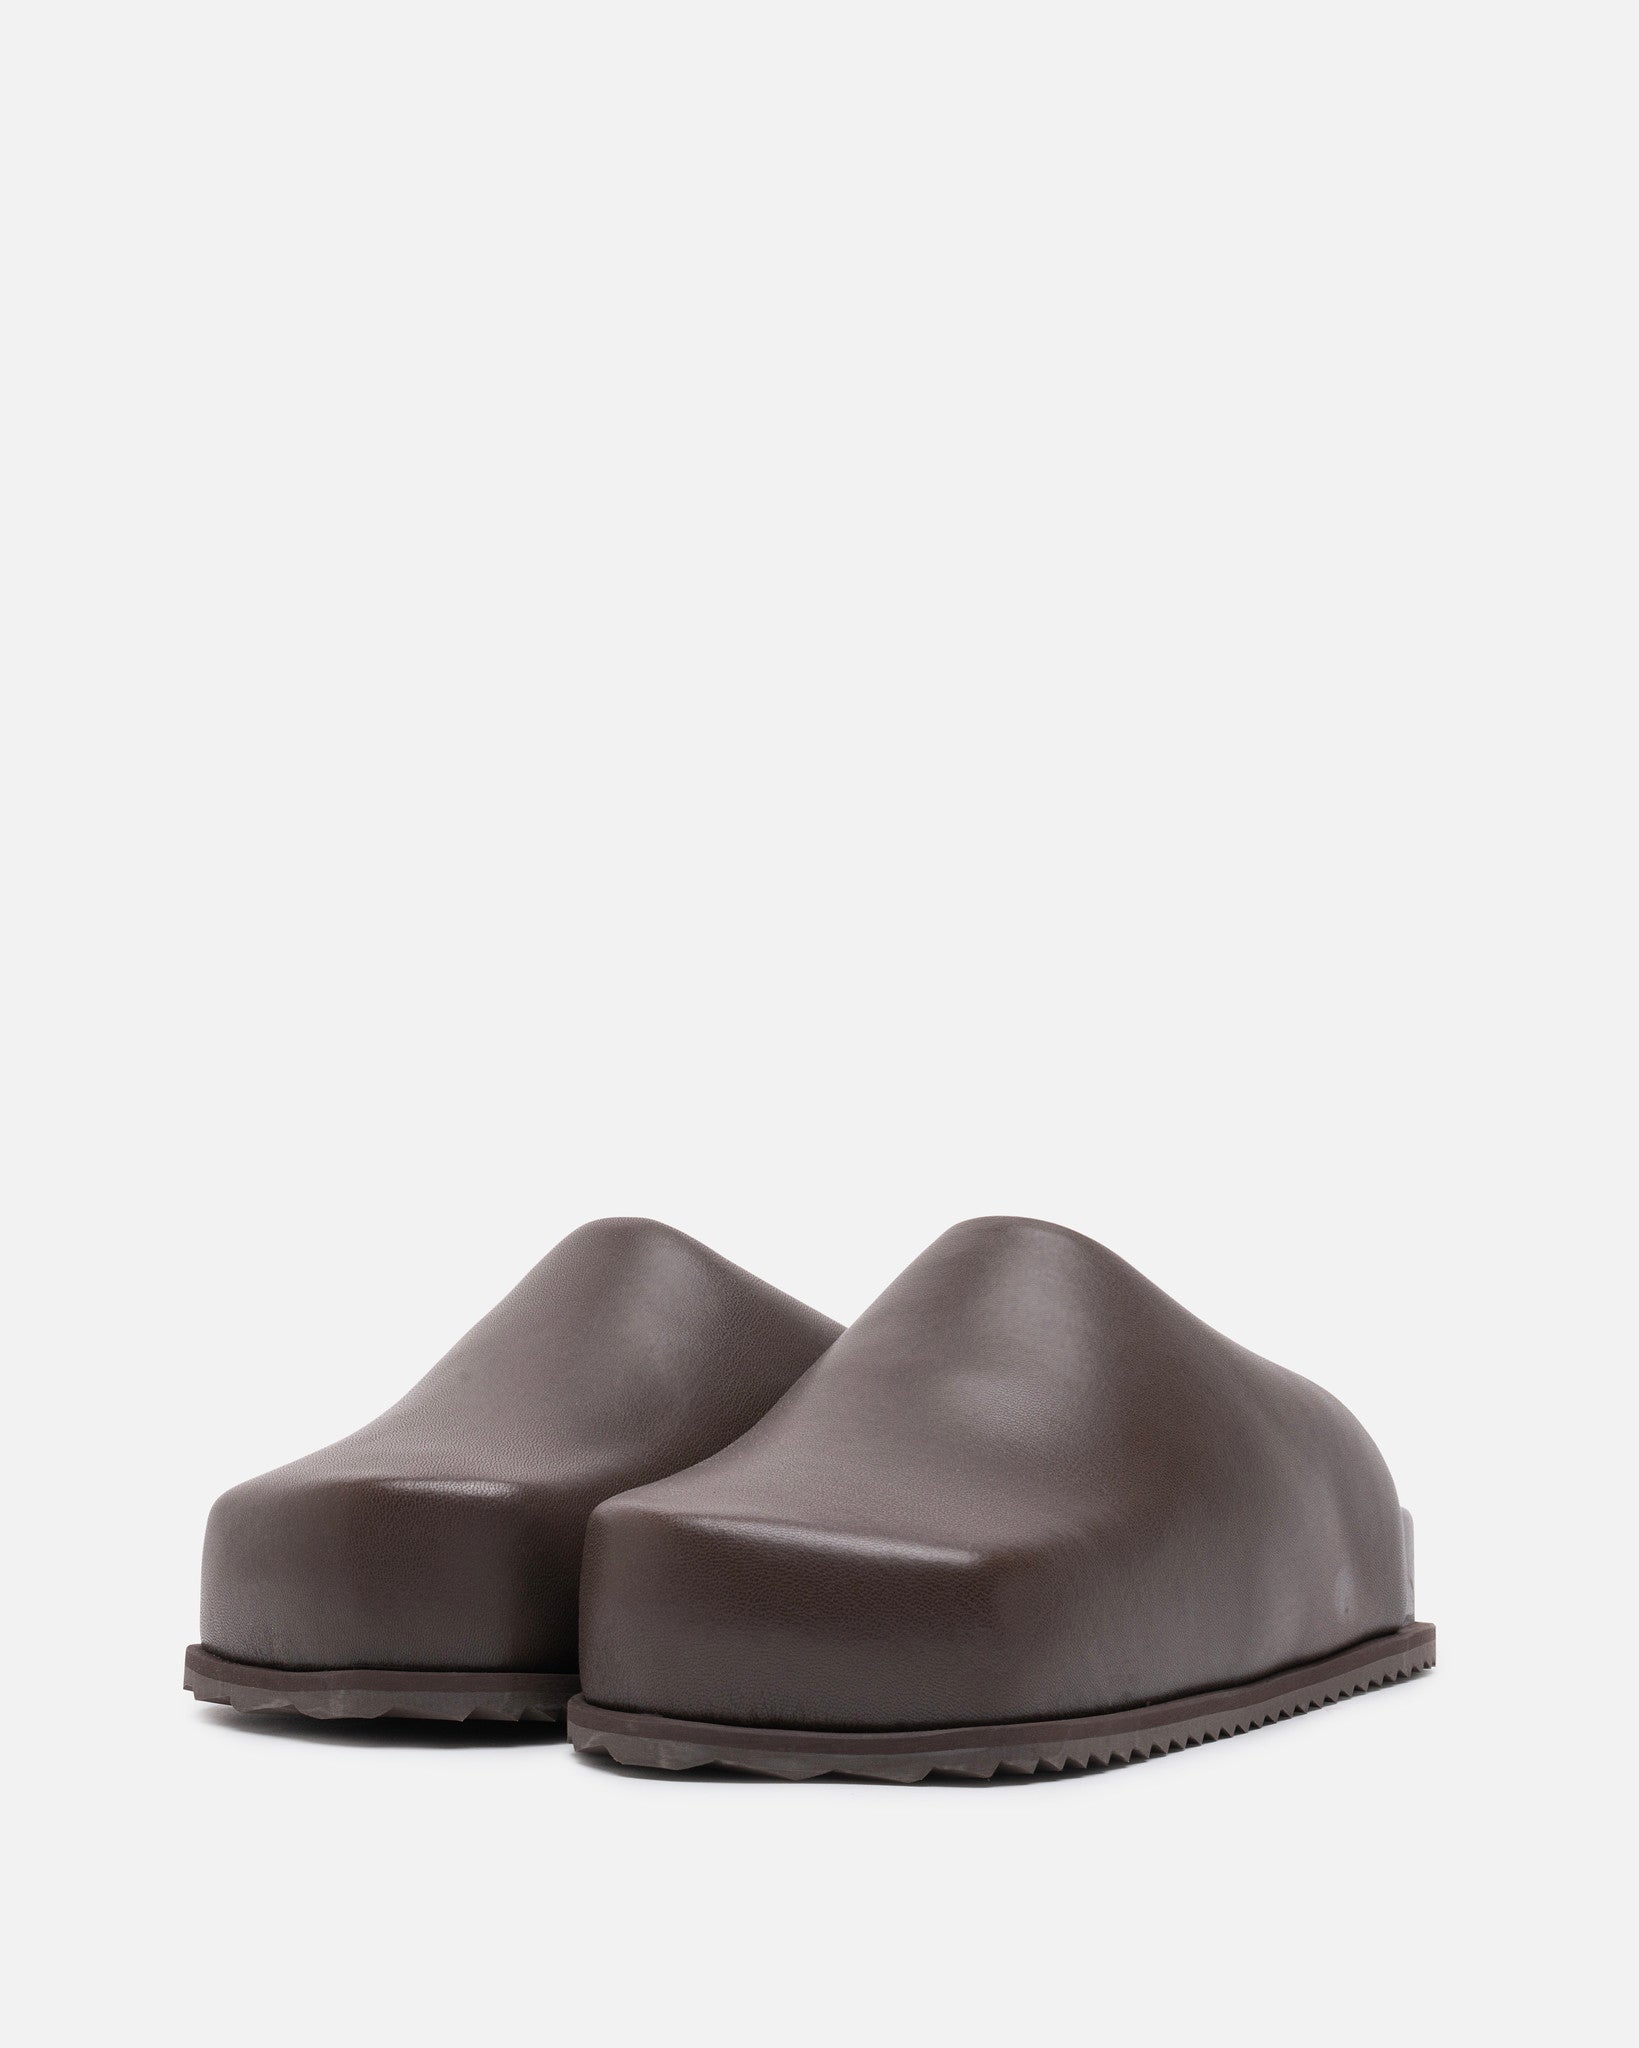 YUME YUME Men's Sneakers Truck Slide in Vanquish Chocolate